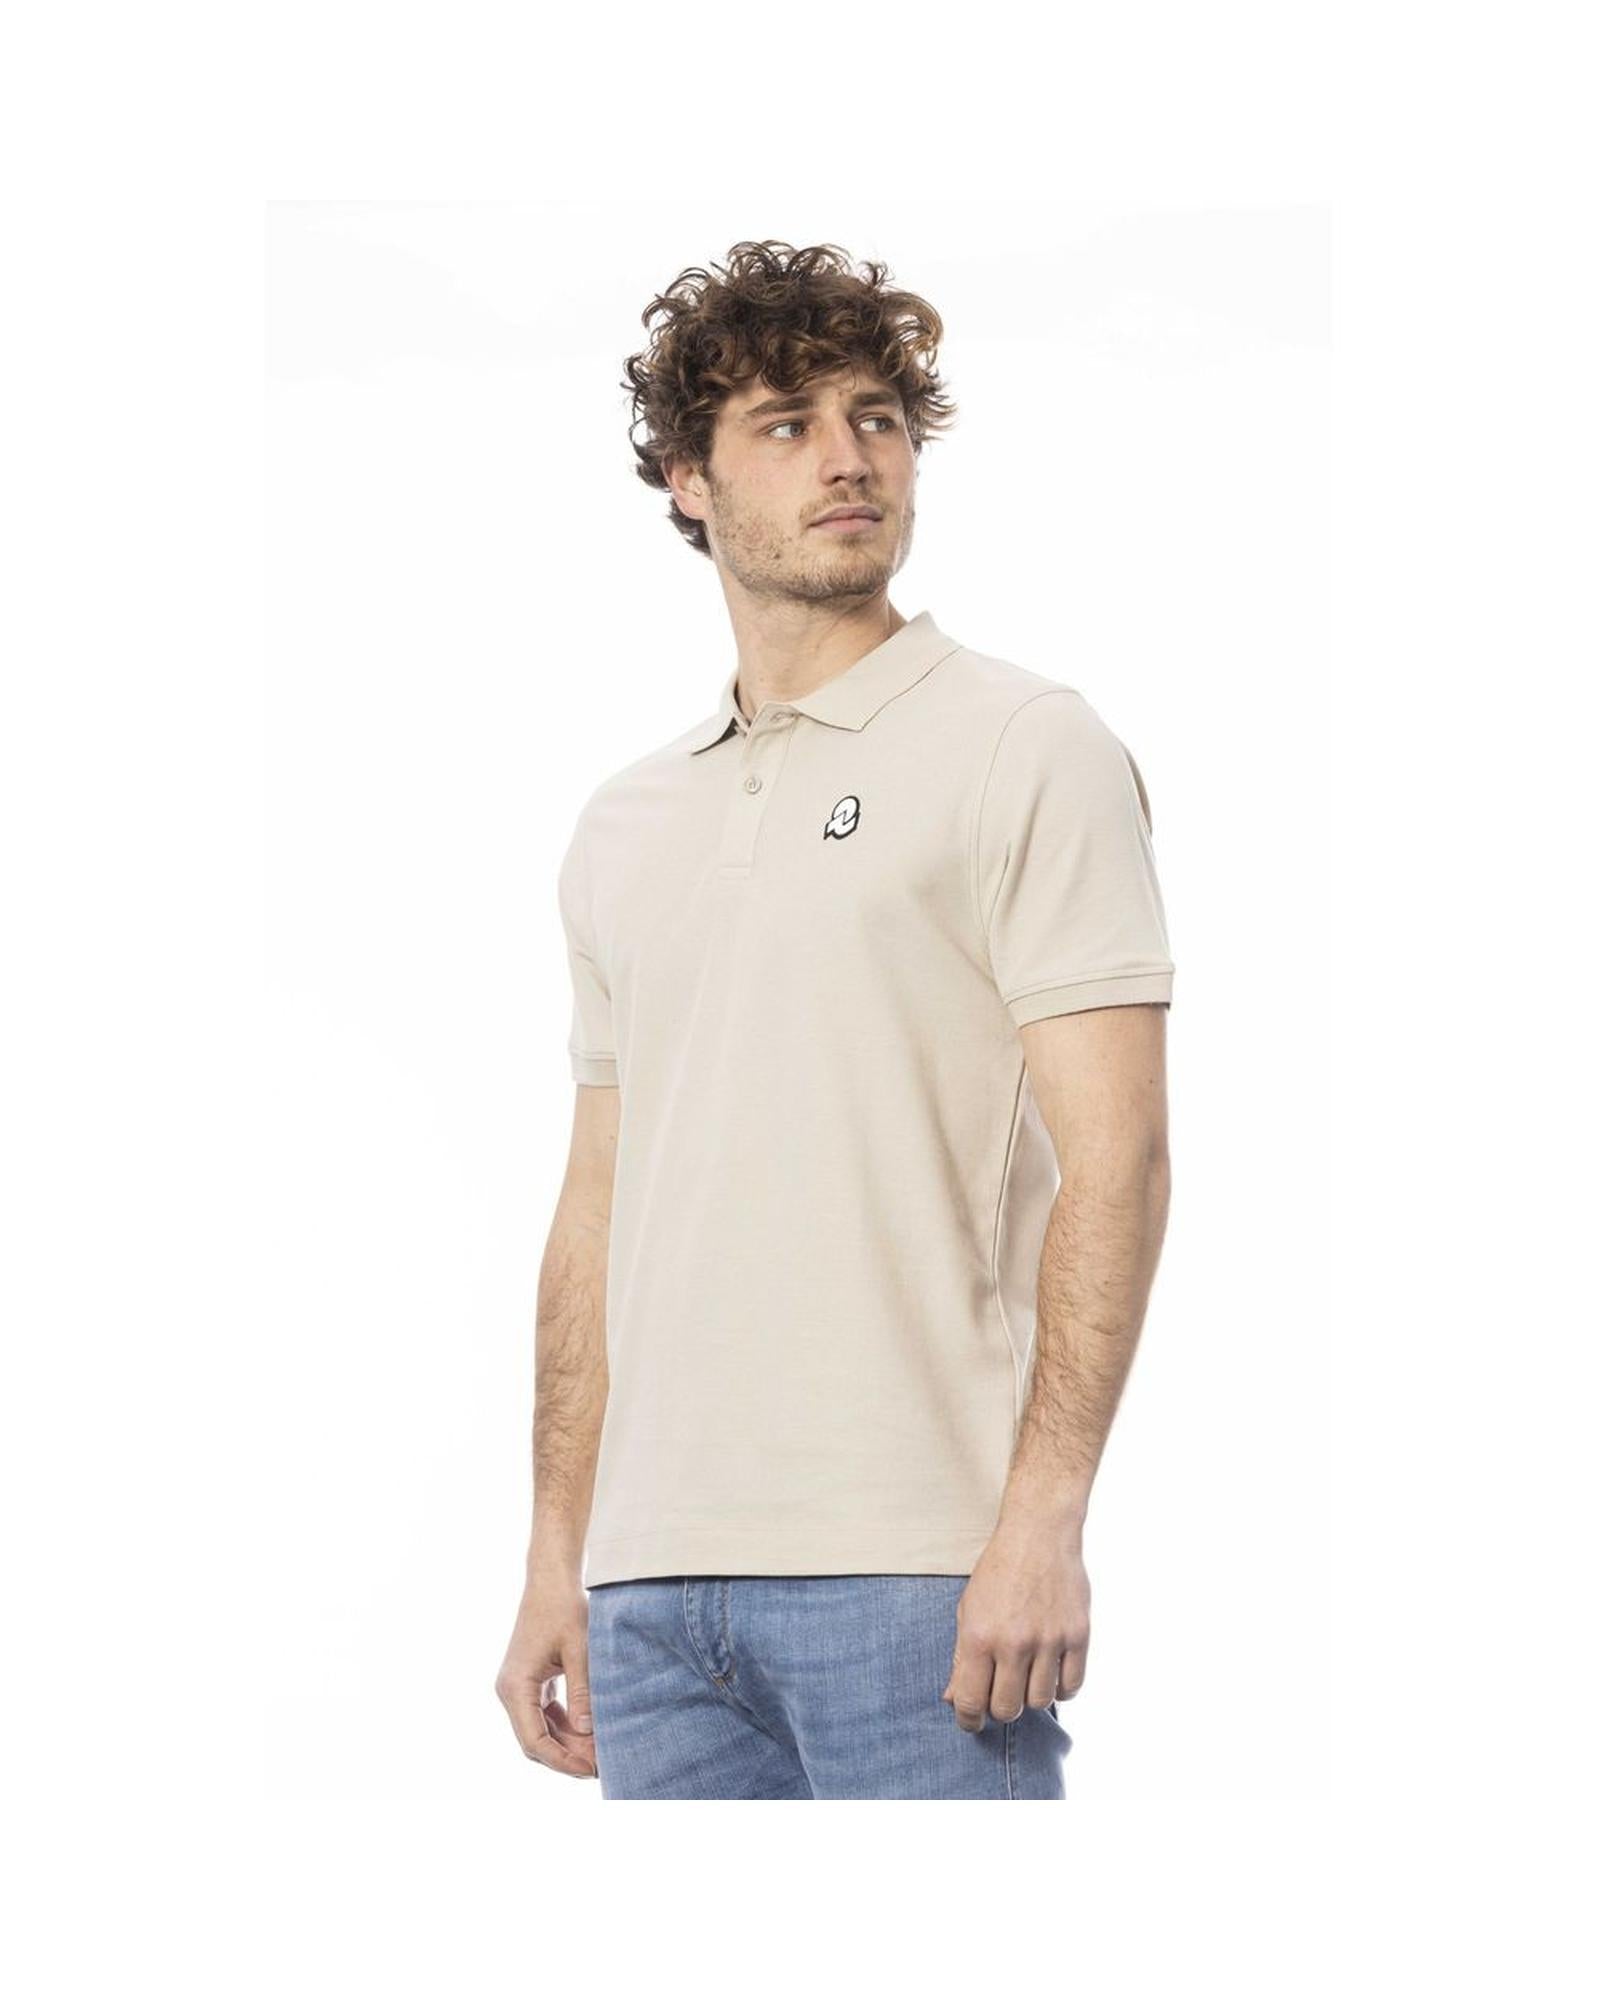 Invicta Men's Beige Cotton Polo Shirt - S